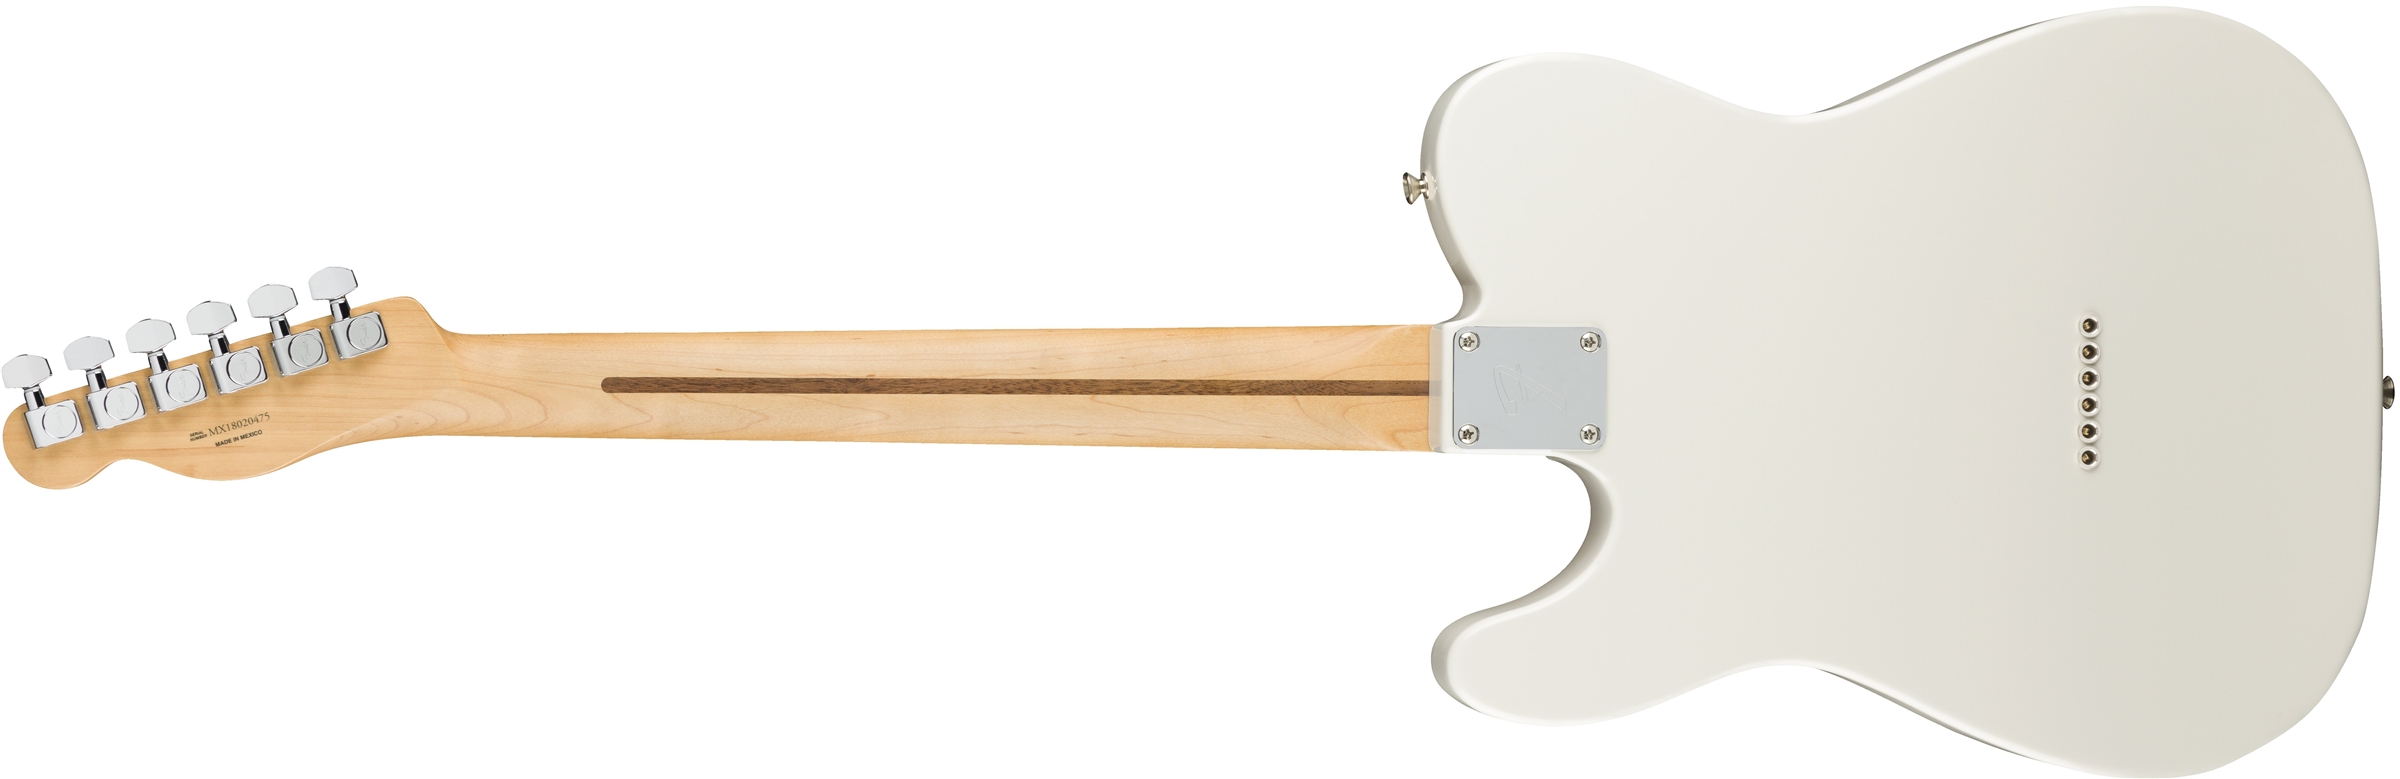 Fender Tele Player Mex Mn - Polar White - Televorm elektrische gitaar - Variation 2